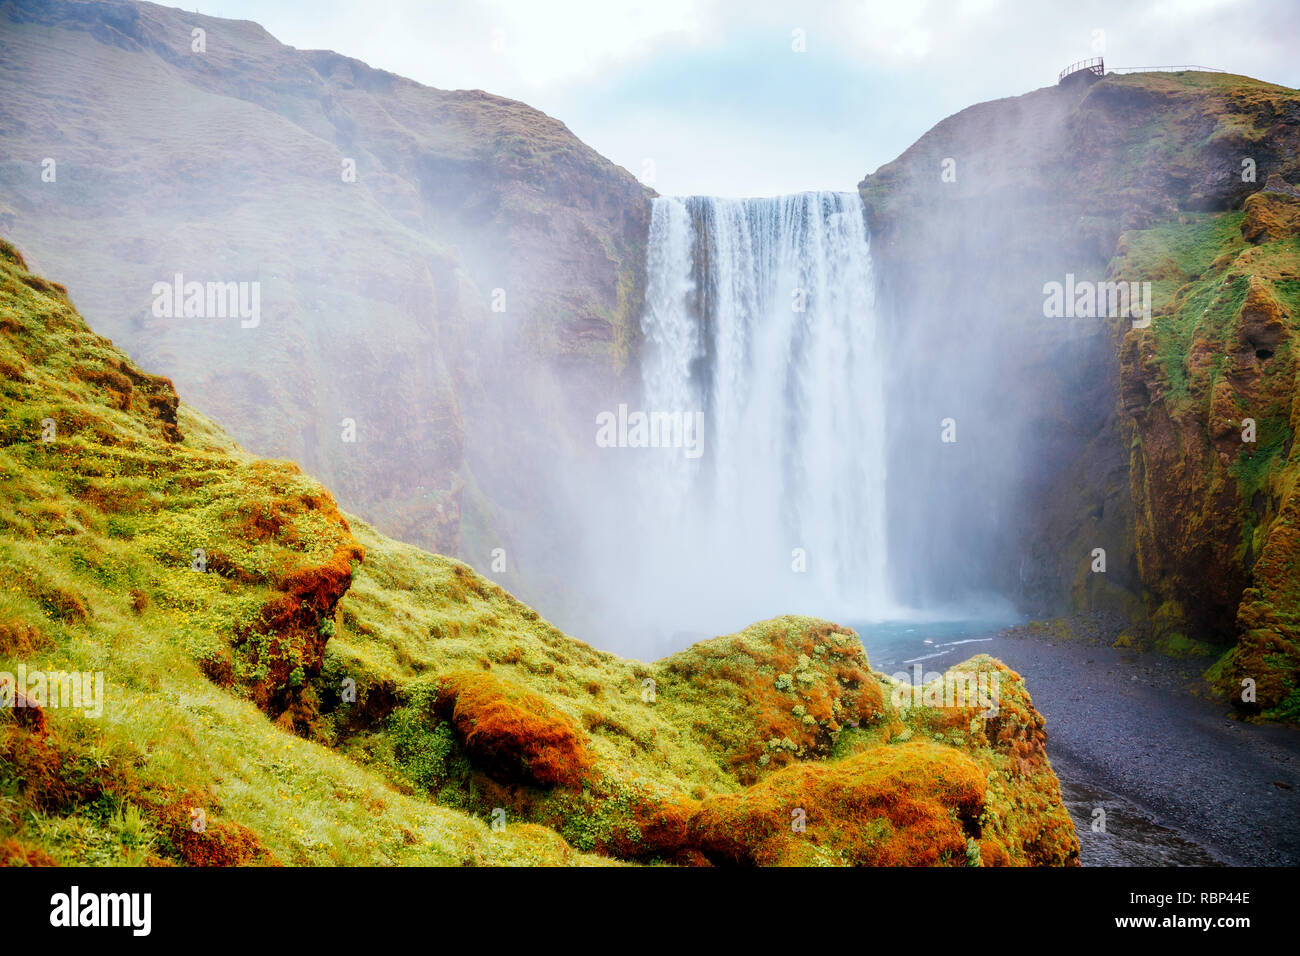 Schöner Blick auf den berühmten Wasserfall Skogafoss und die malerische Umgebung. Dramatische und malerische Szene. Beliebte Touristenattraktion. Ort Skoga ri Stockfoto